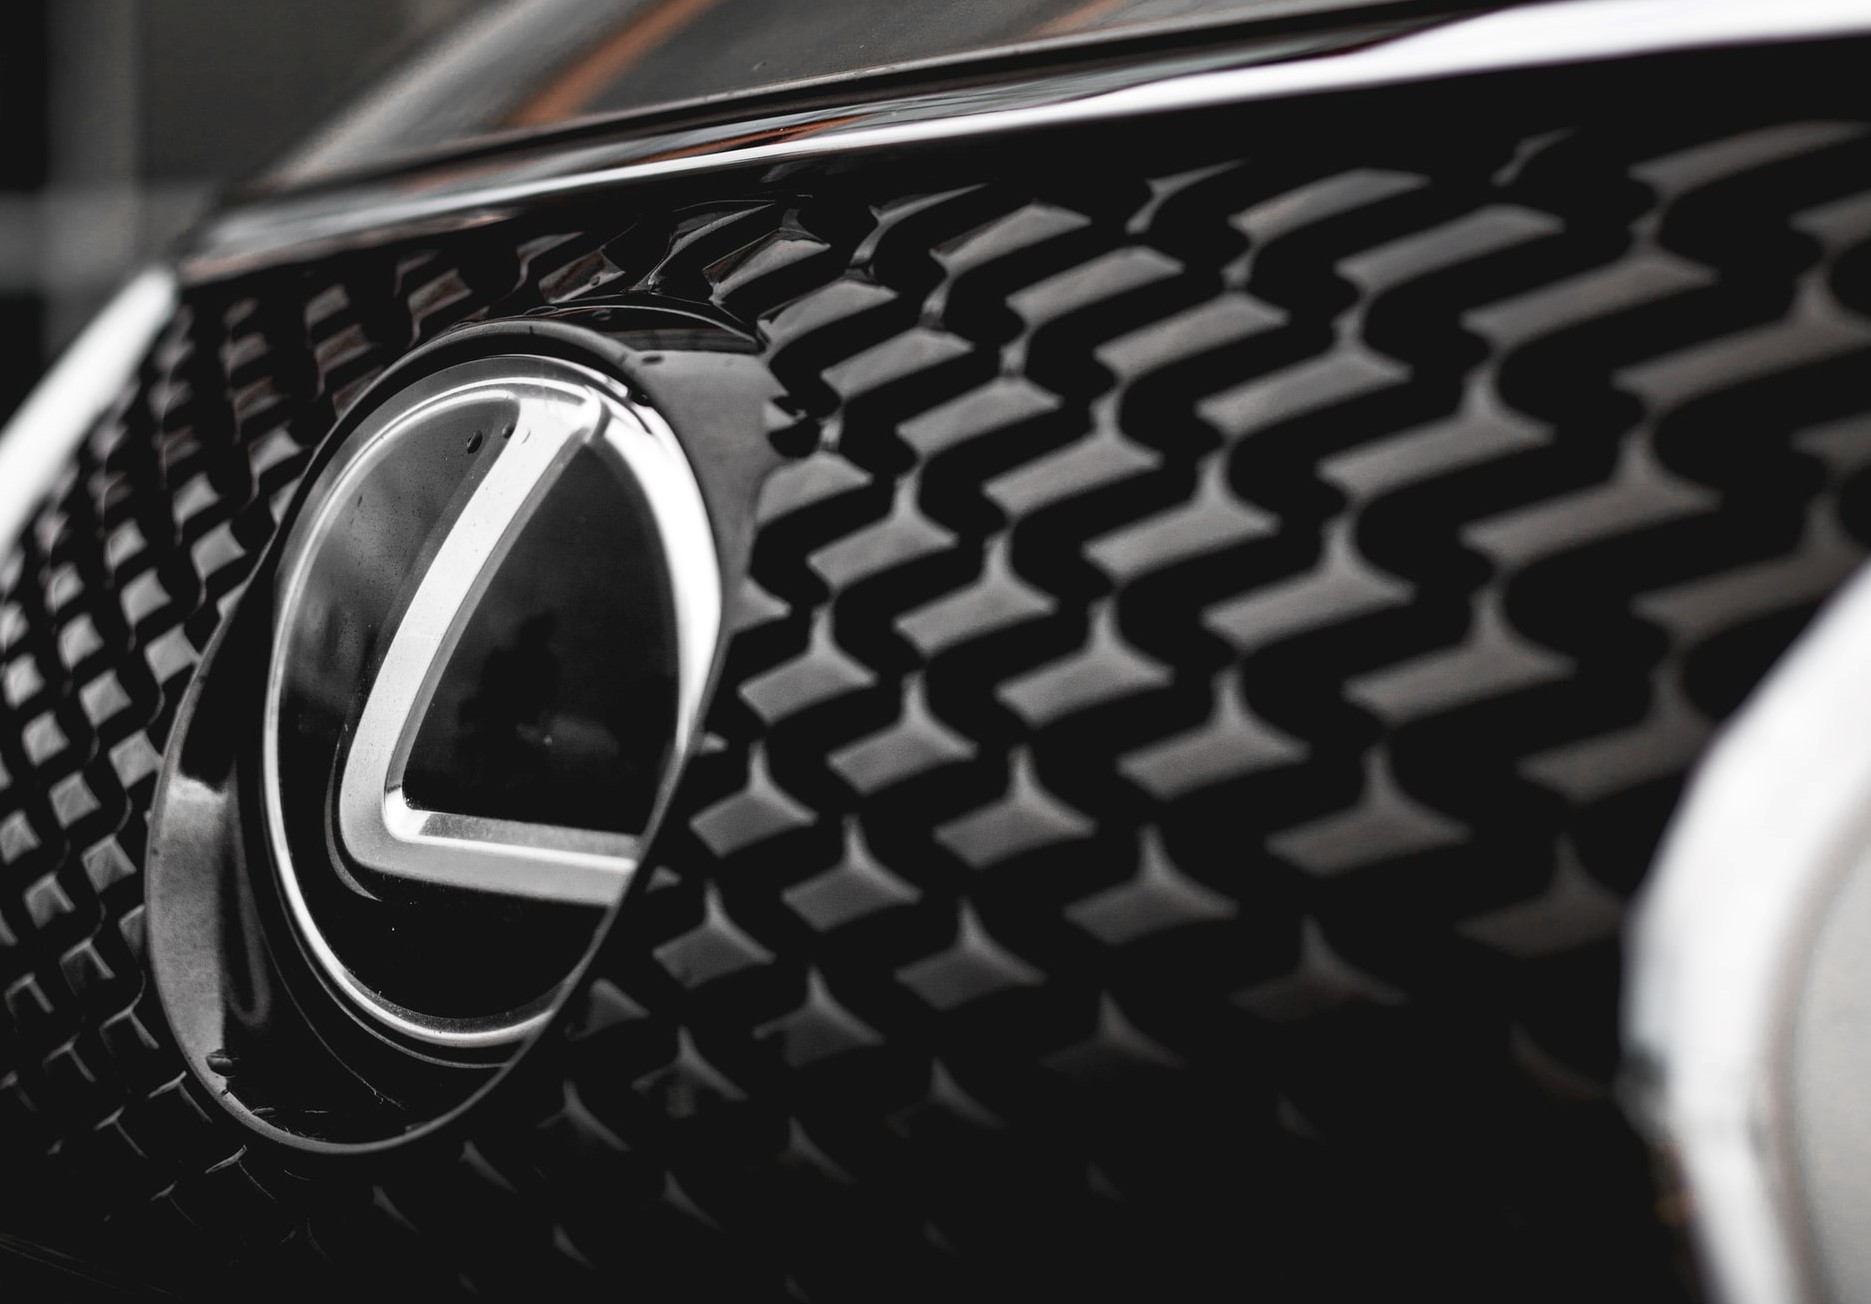 Lexus NX 2022: Crossover in a Plug-In Hybrid Form